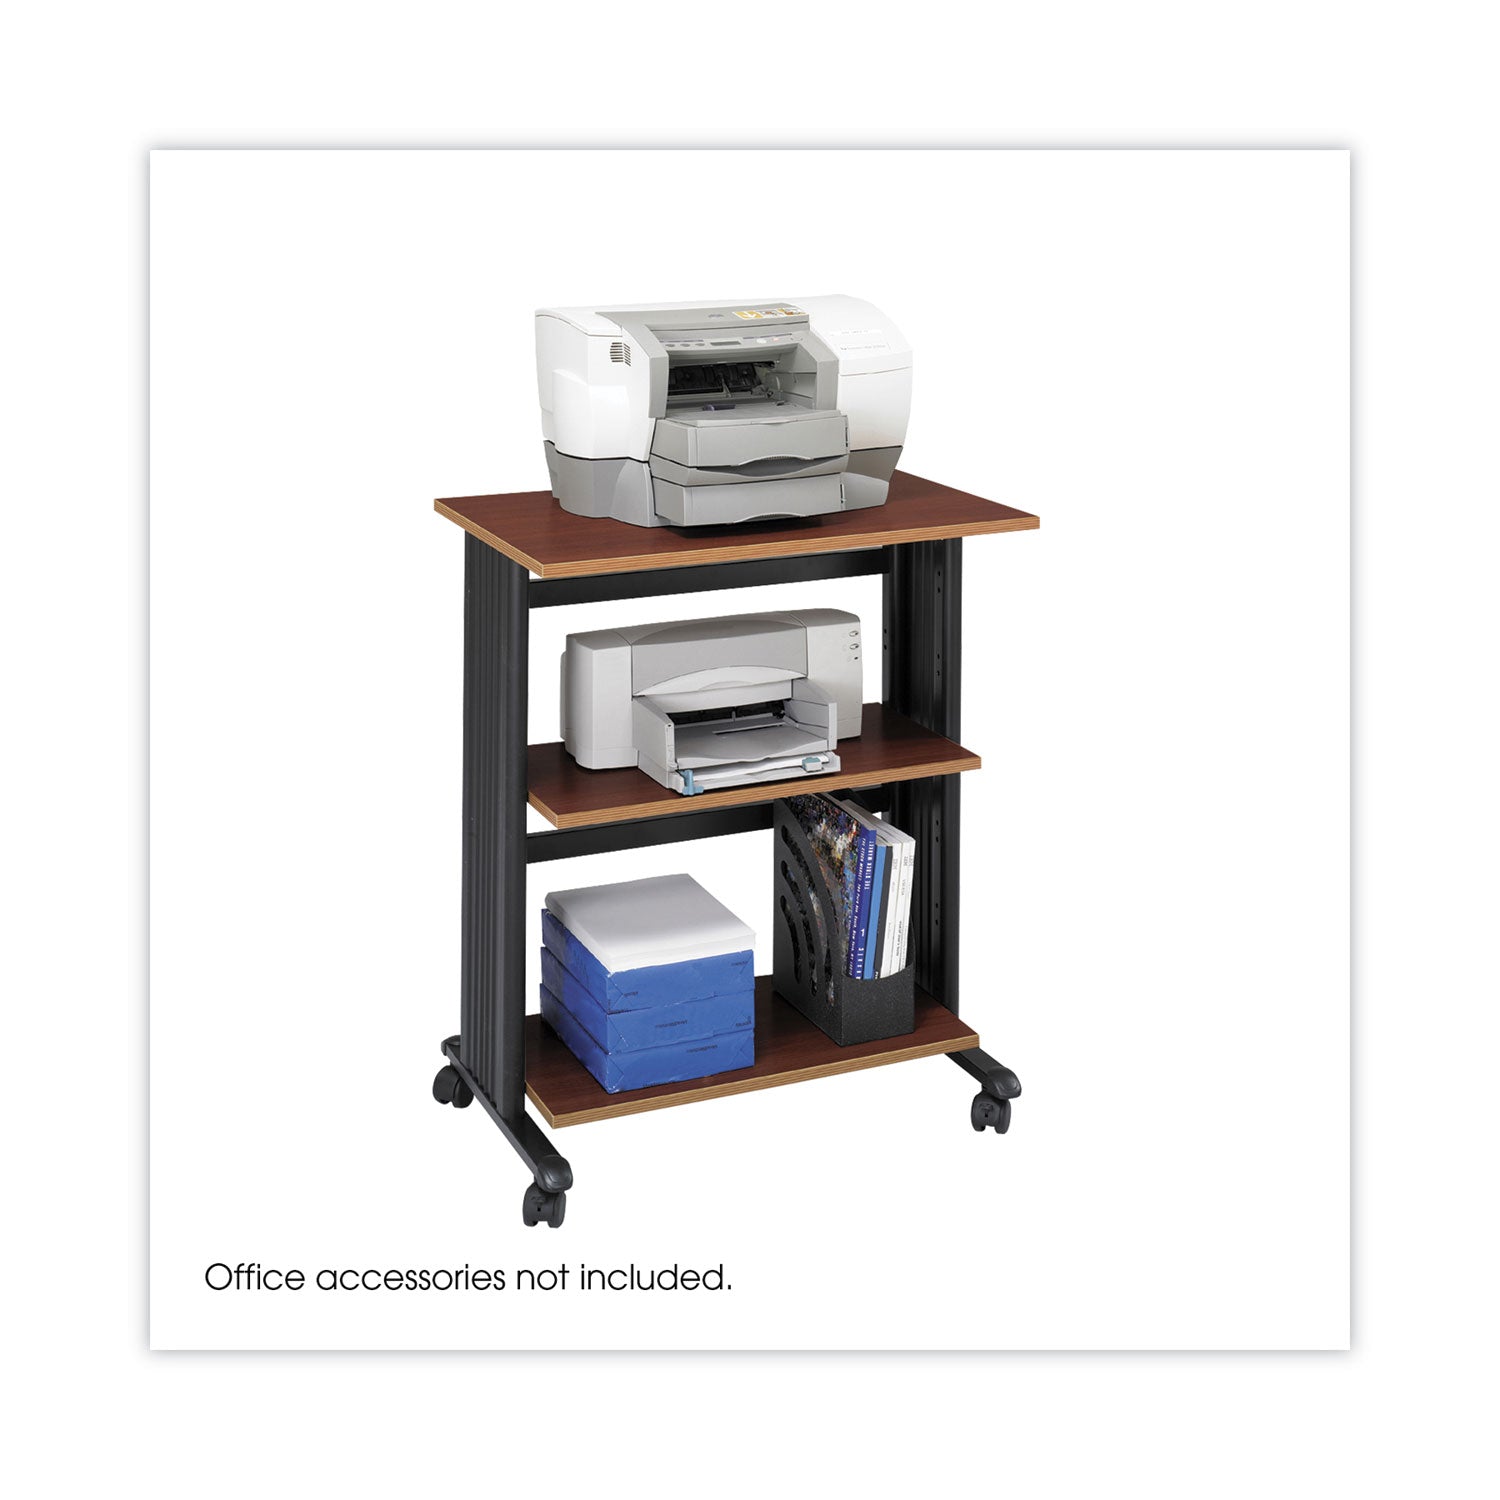 Muv Three Level Machine Cart/Printer Stand, Engineered Wood, 3 Shelves, 29.5" x 20" x 35", Cherry/Black - 